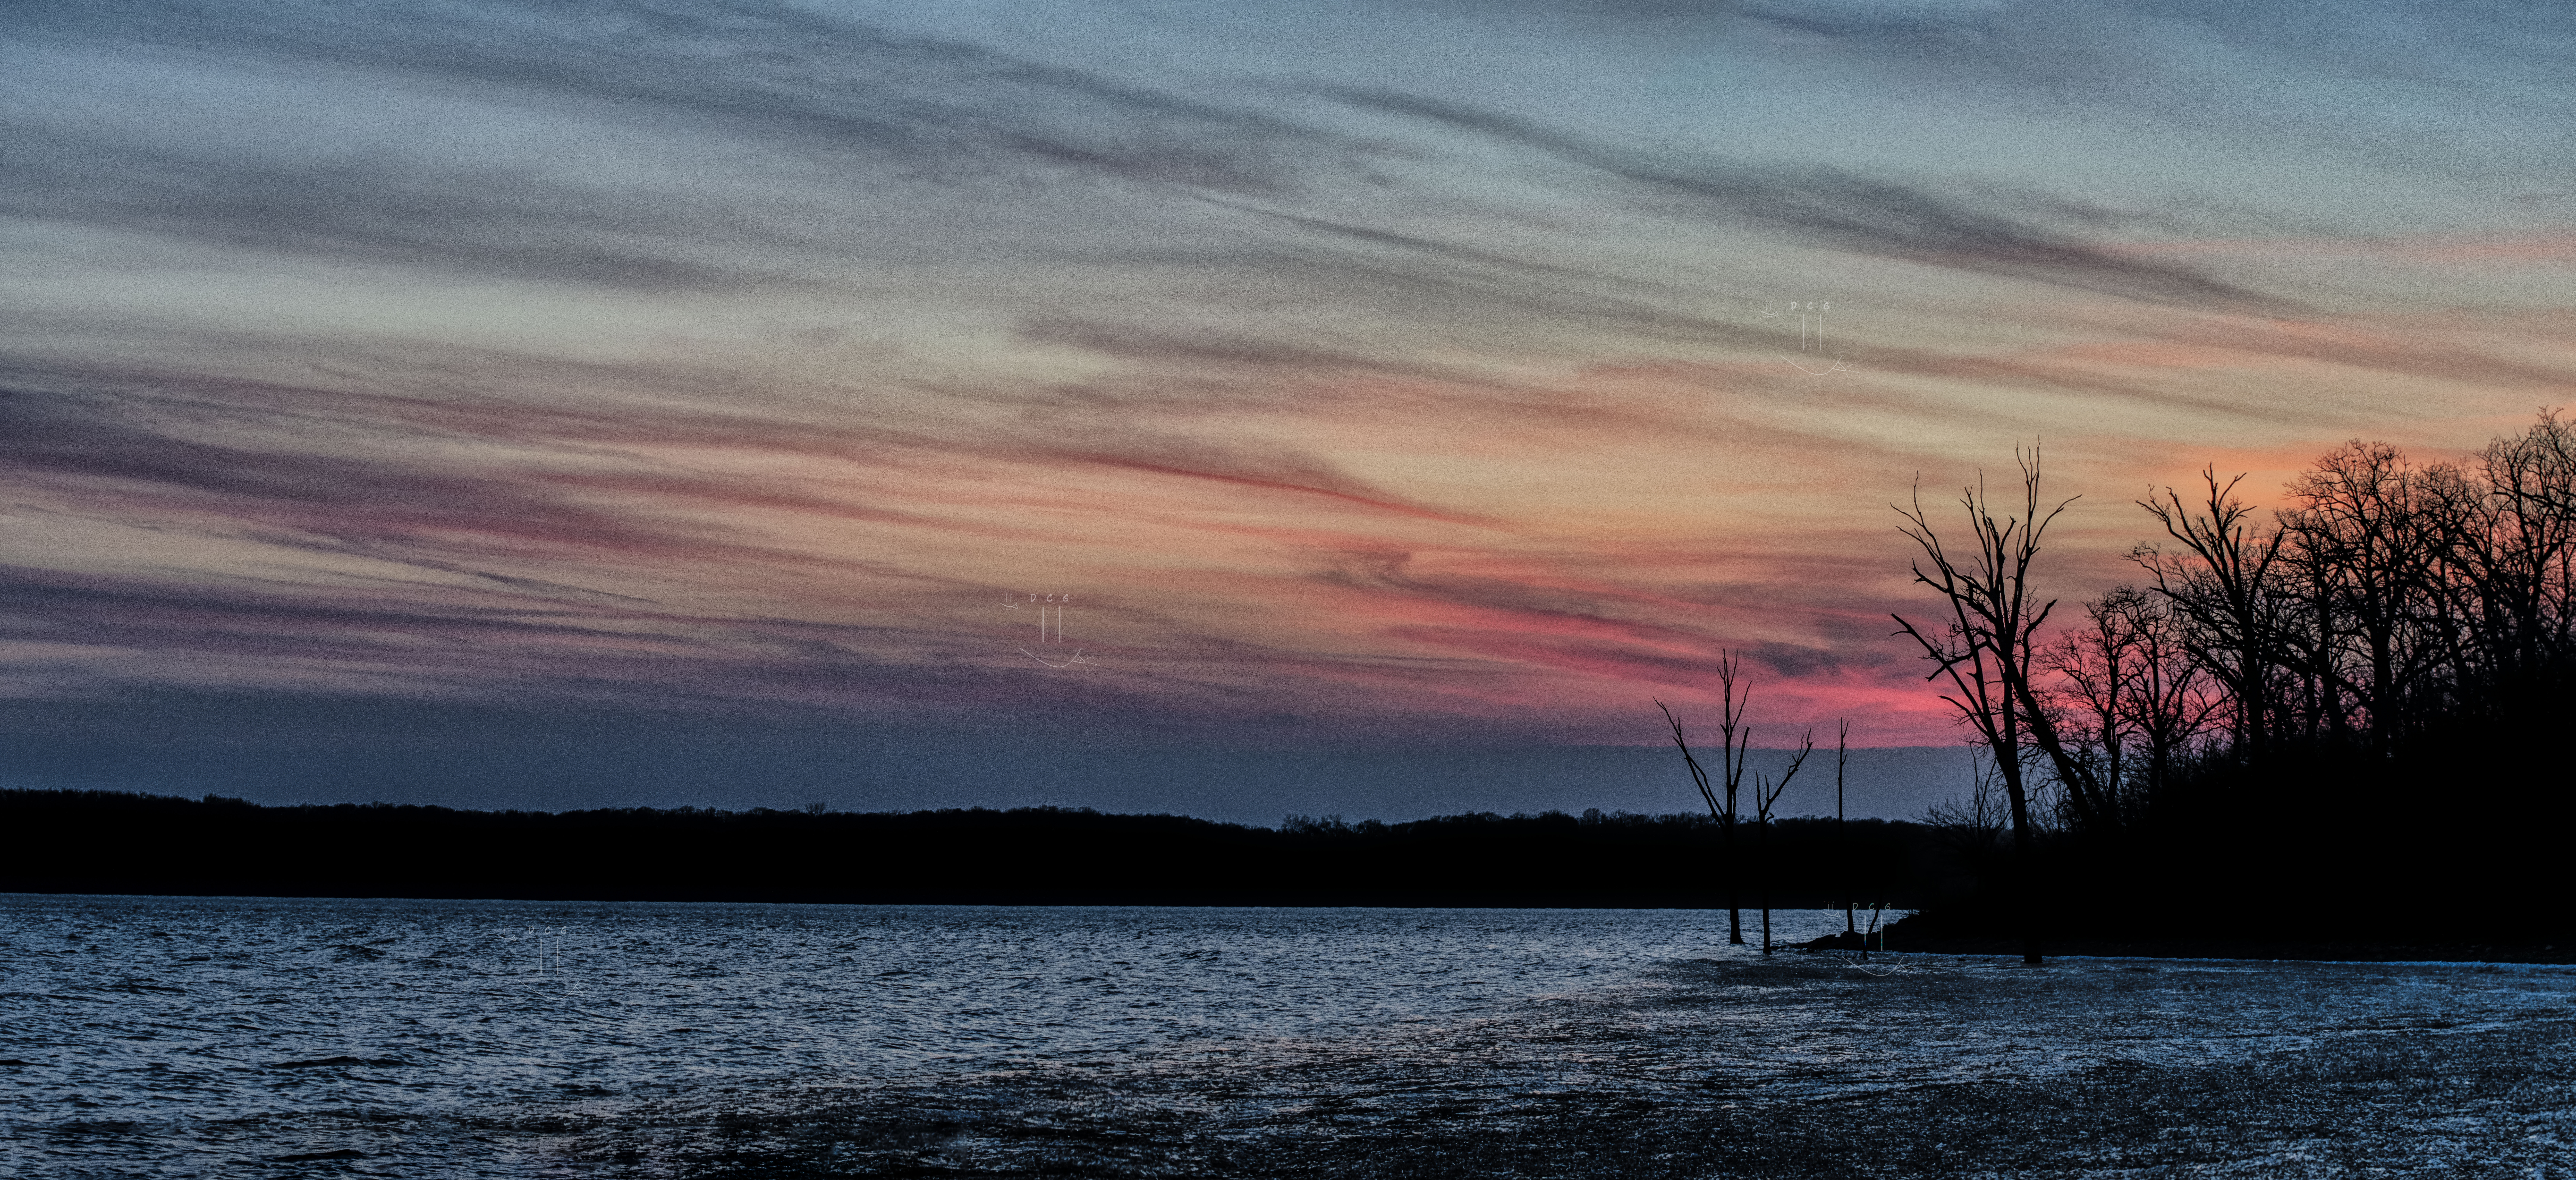 Sunset skies above a frozen, slushy lake